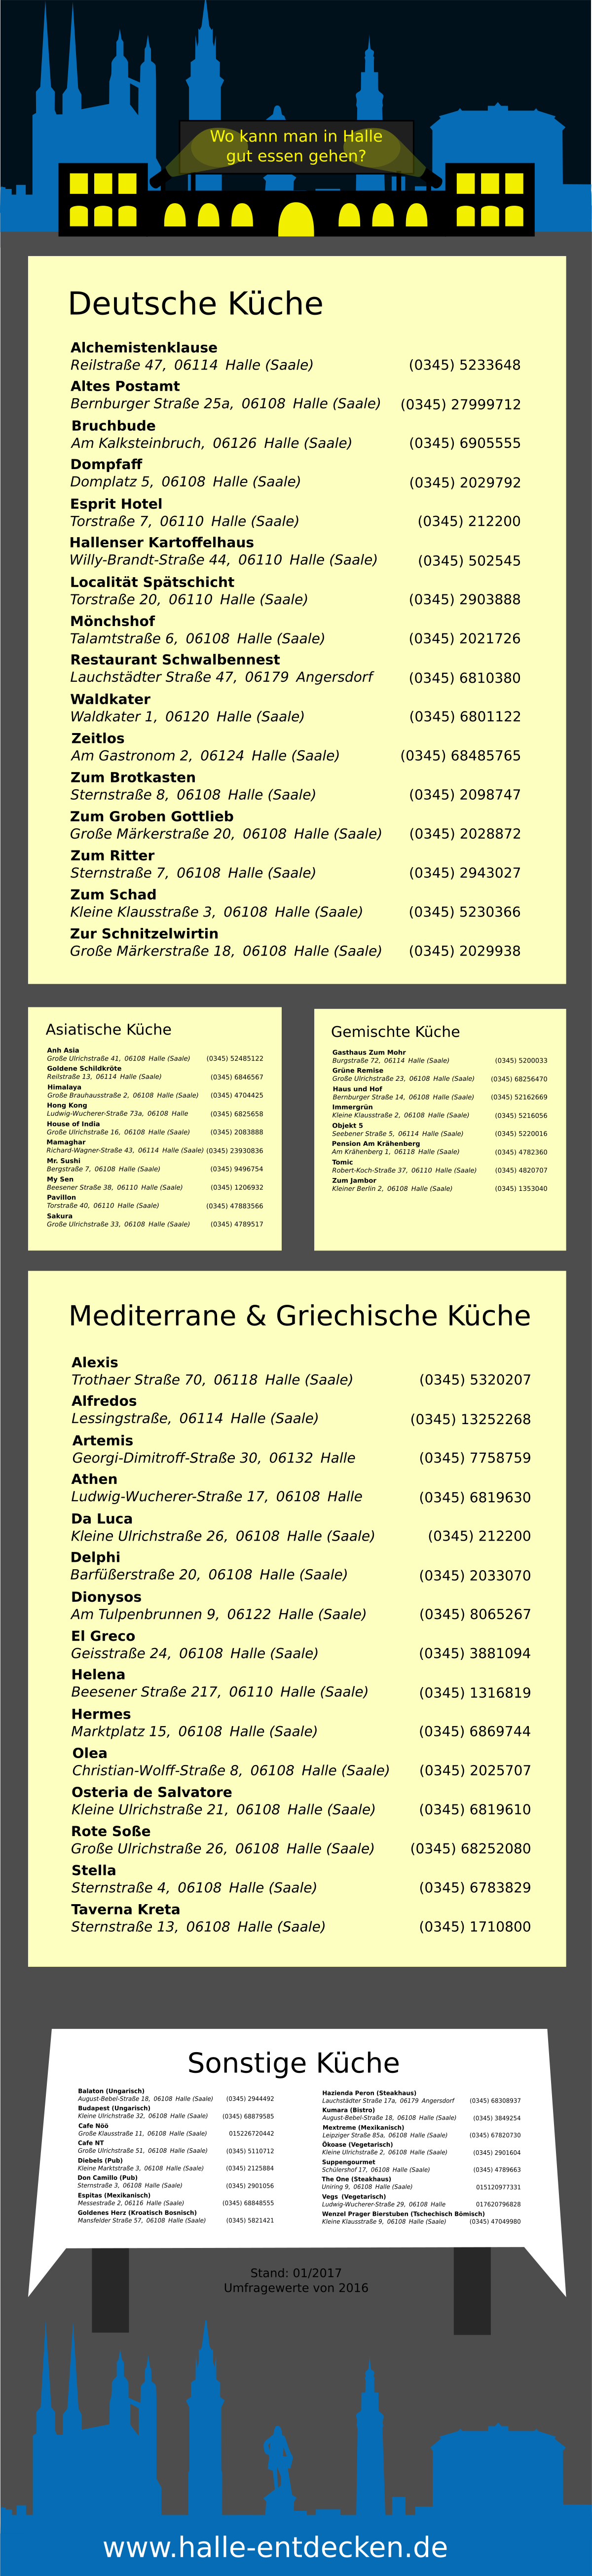 Infografik - Wo kann man in Halle (Saale) gut essen gehen?